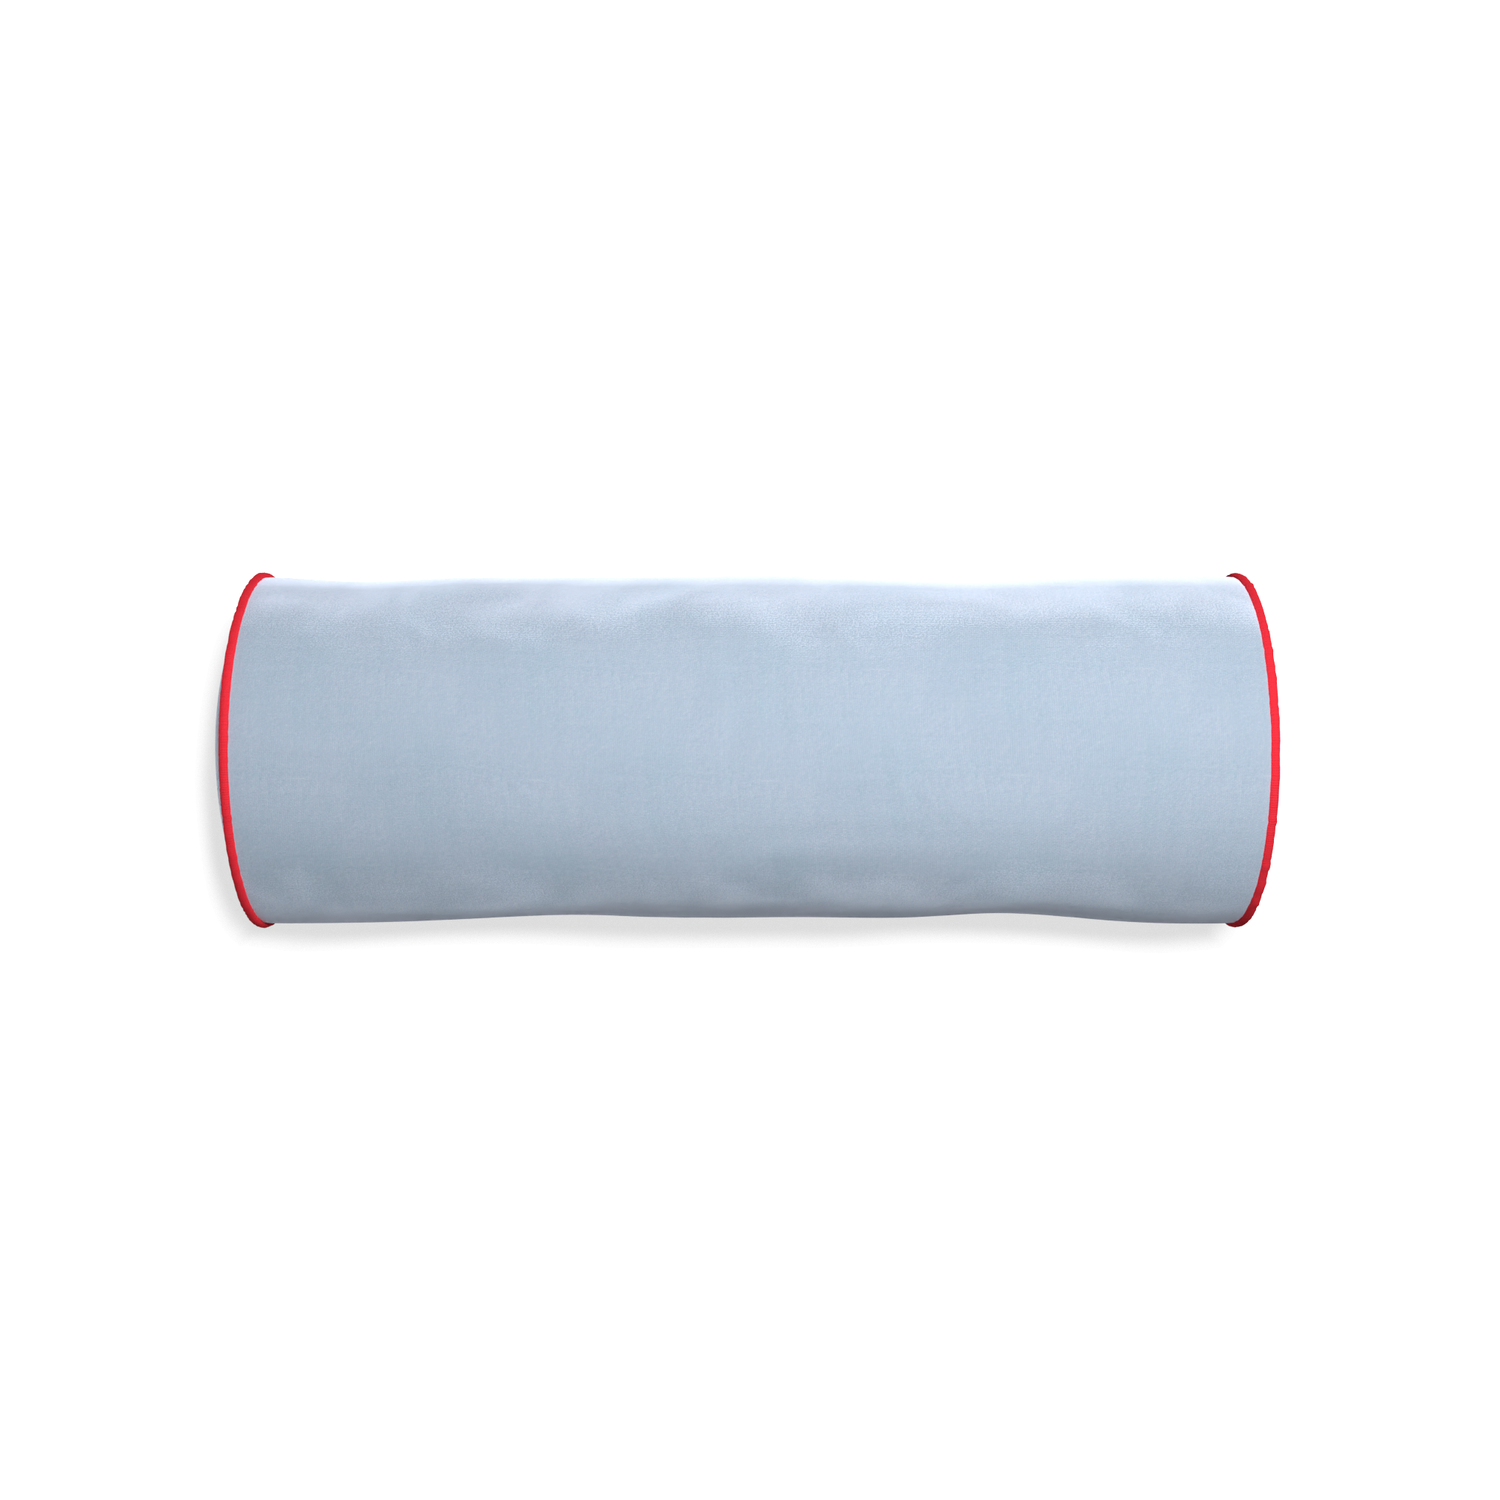 bolster light blue velvet pillow with red piping 